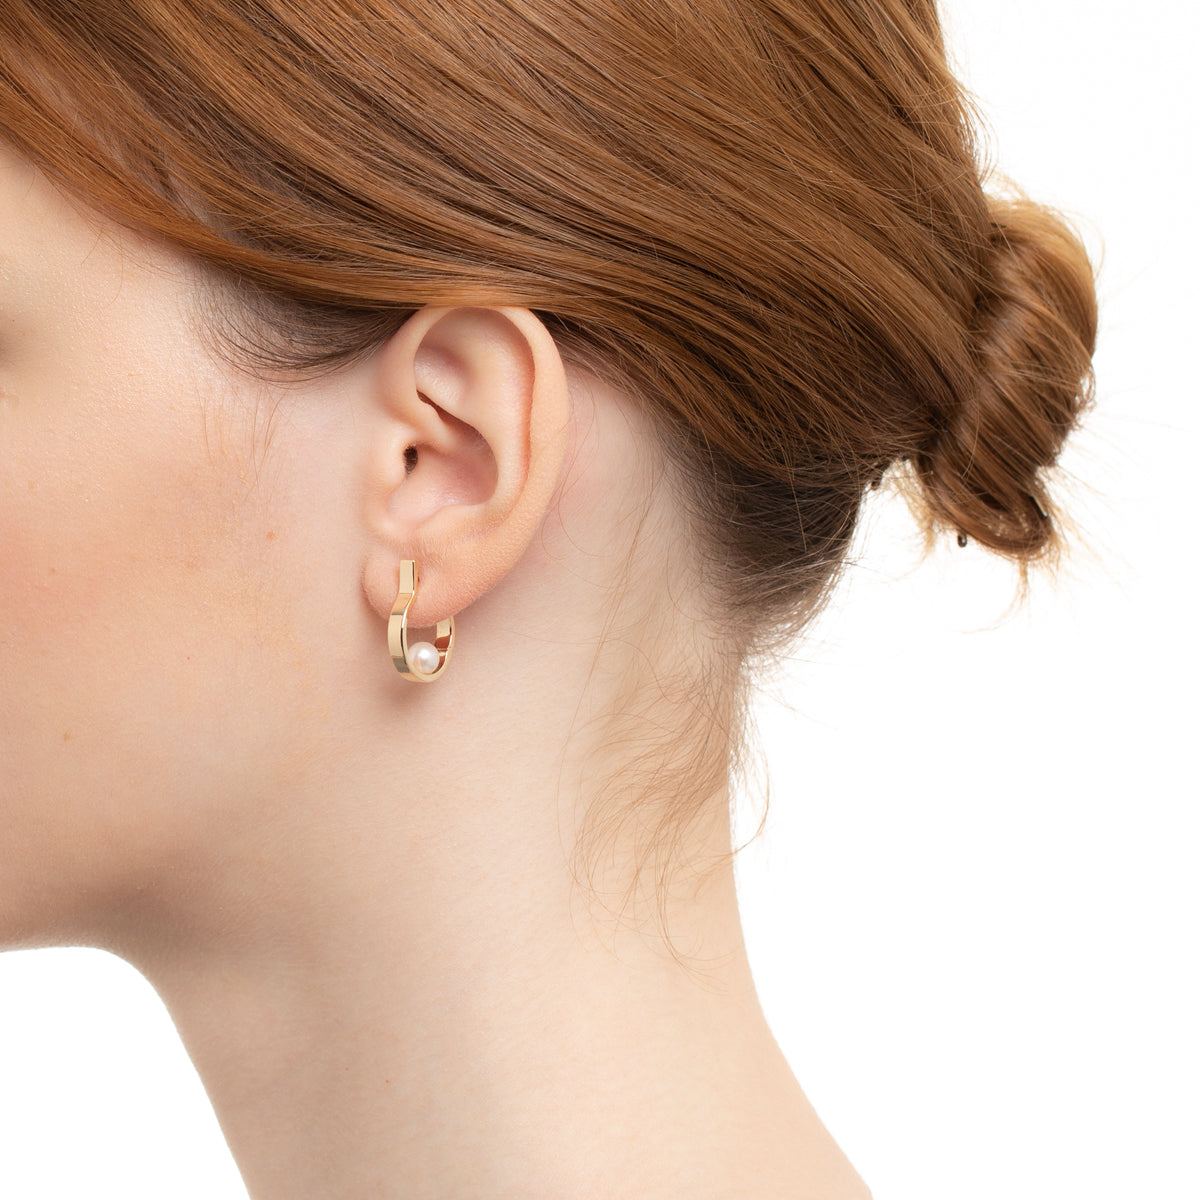 Industria Pearl 3mm Earring